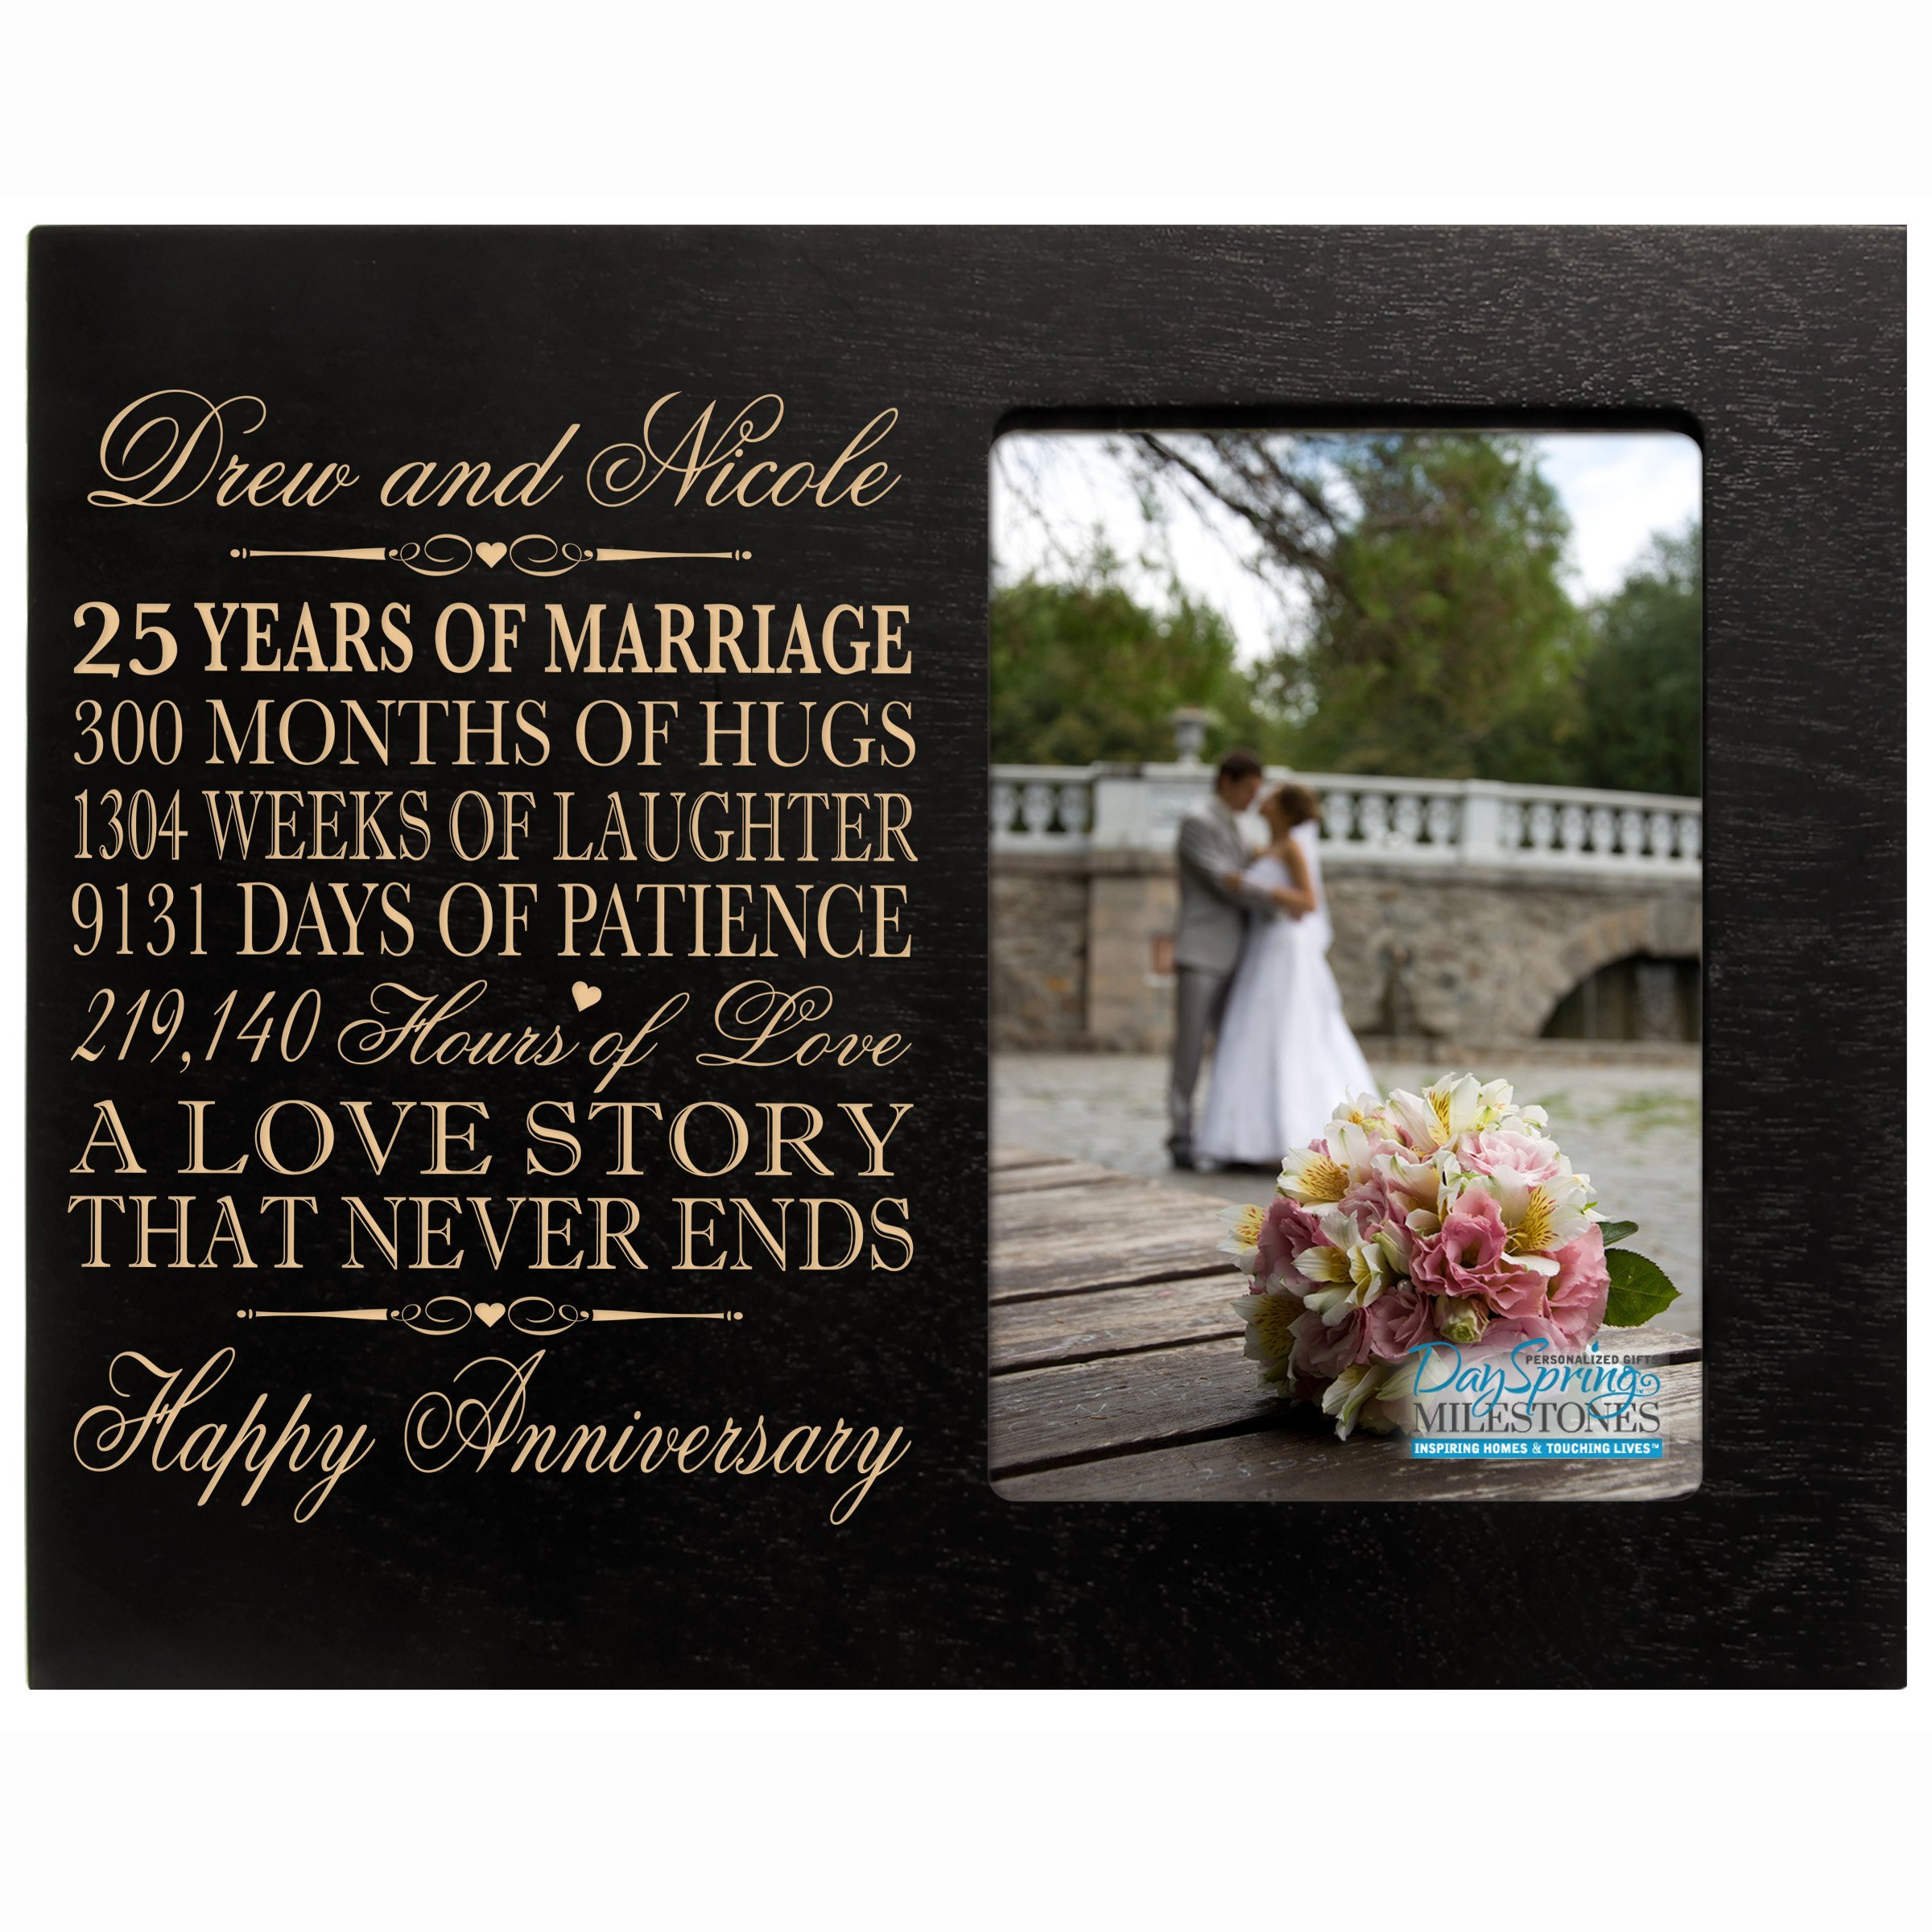 25 Year Anniversary Gift Ideas For Her
 25 Years Wedding Anniversary Amazon